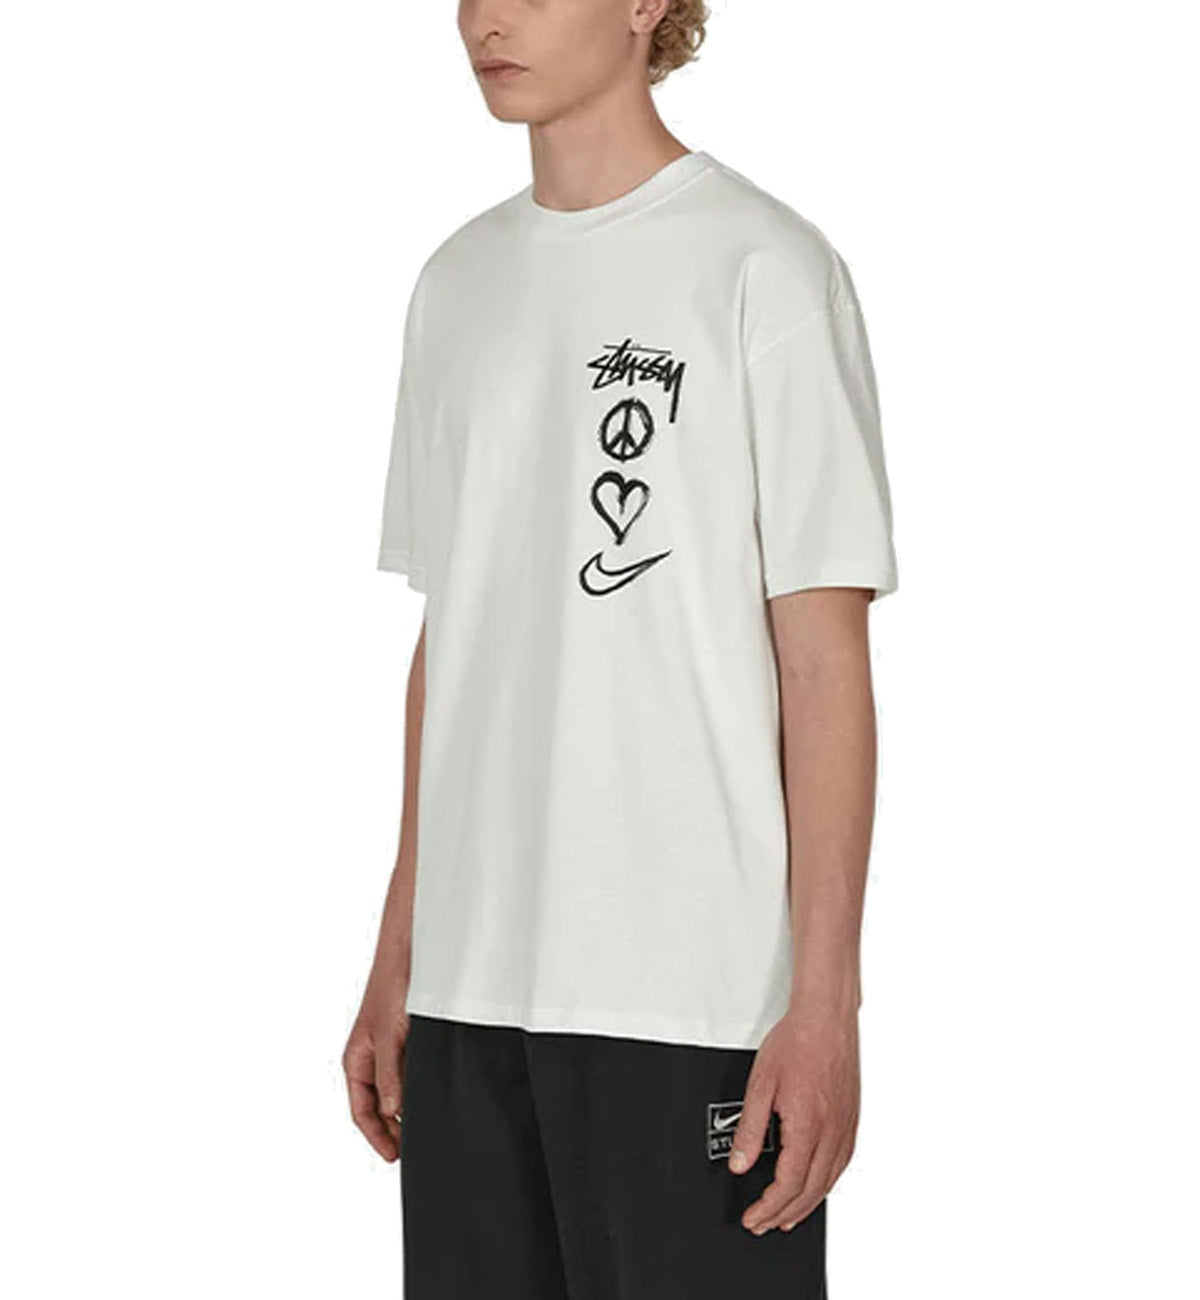 Nike X Stussy International T-Shirt White for Men